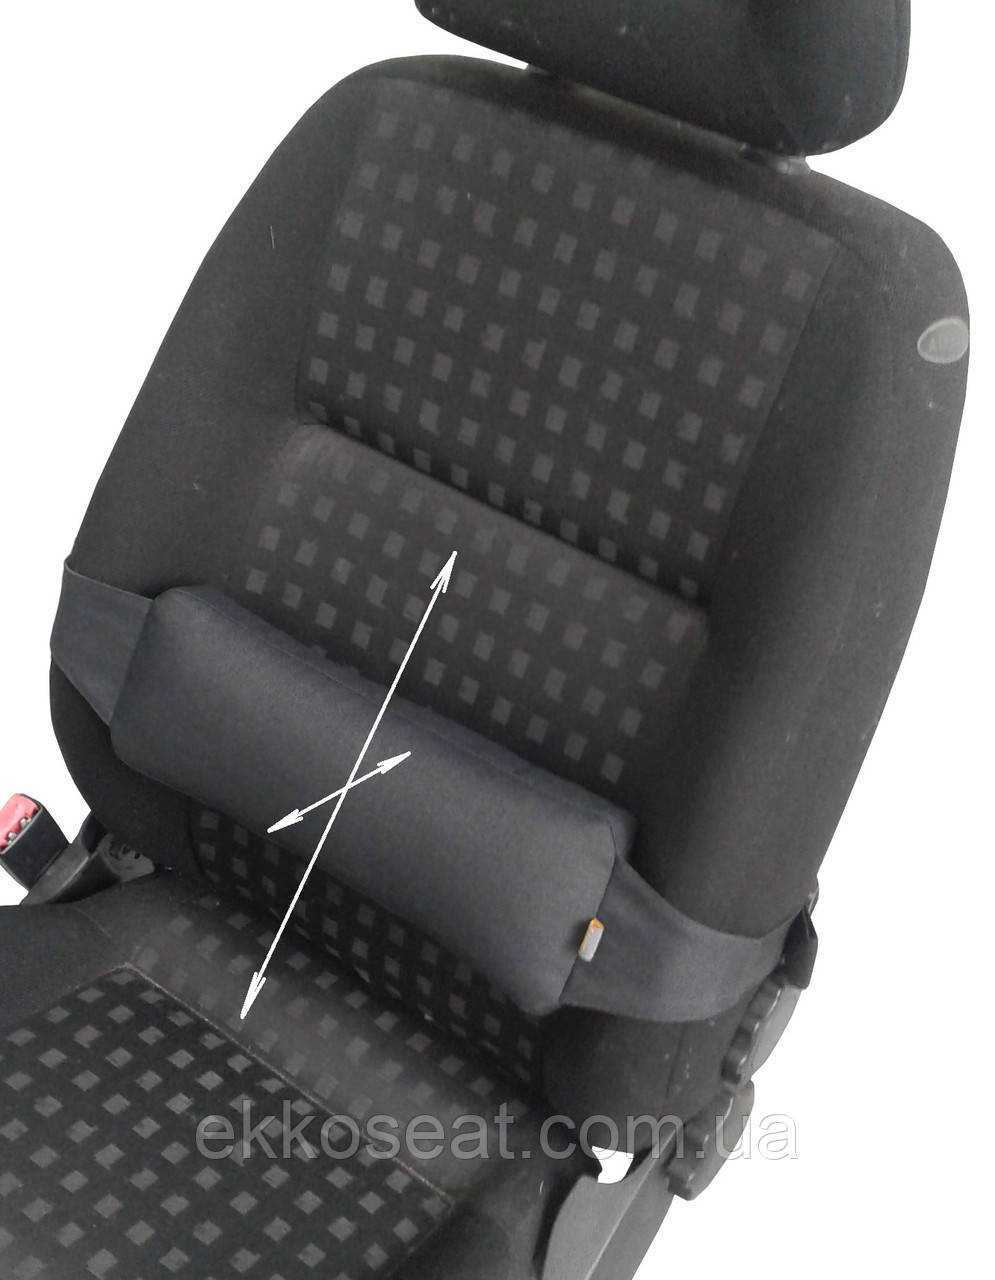 Ортопедична подушка накладка EKKOSEAT під спину на крісло автомобіля. Універсальна